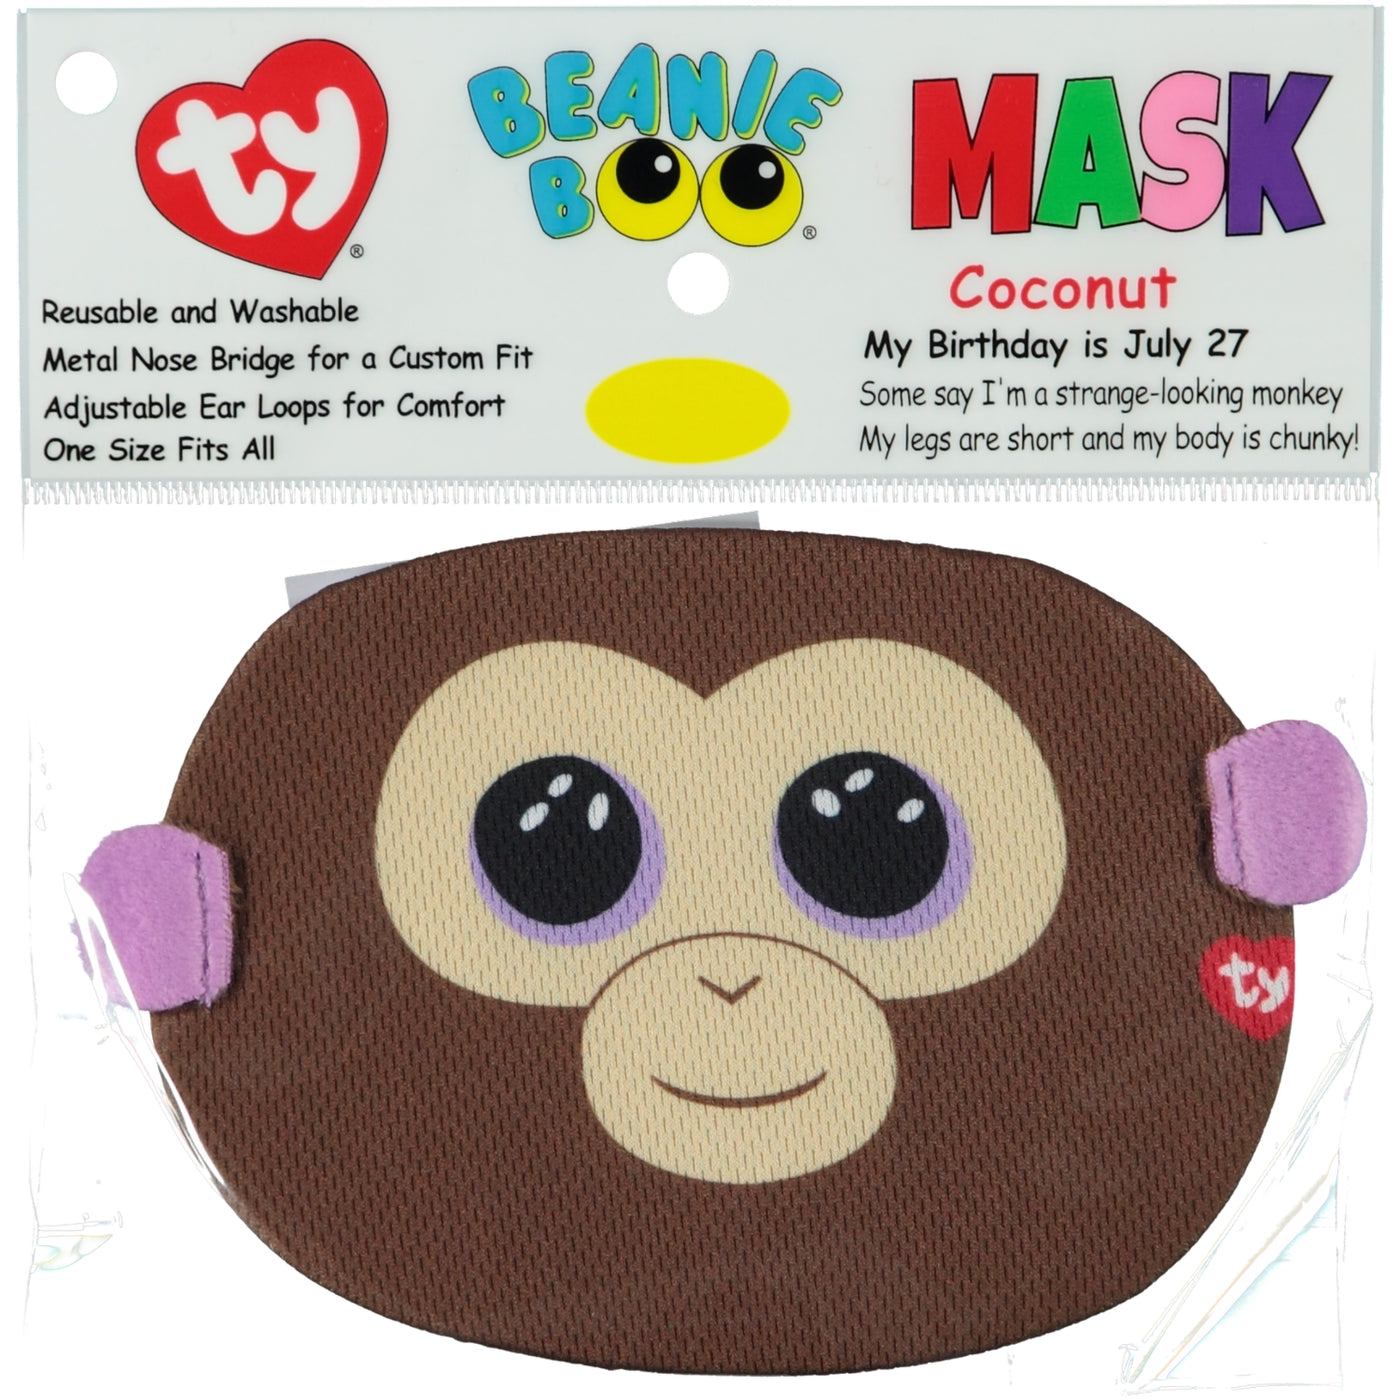 TY Beanie Boos Face Mask Coconut Monkey - stylecreep.com